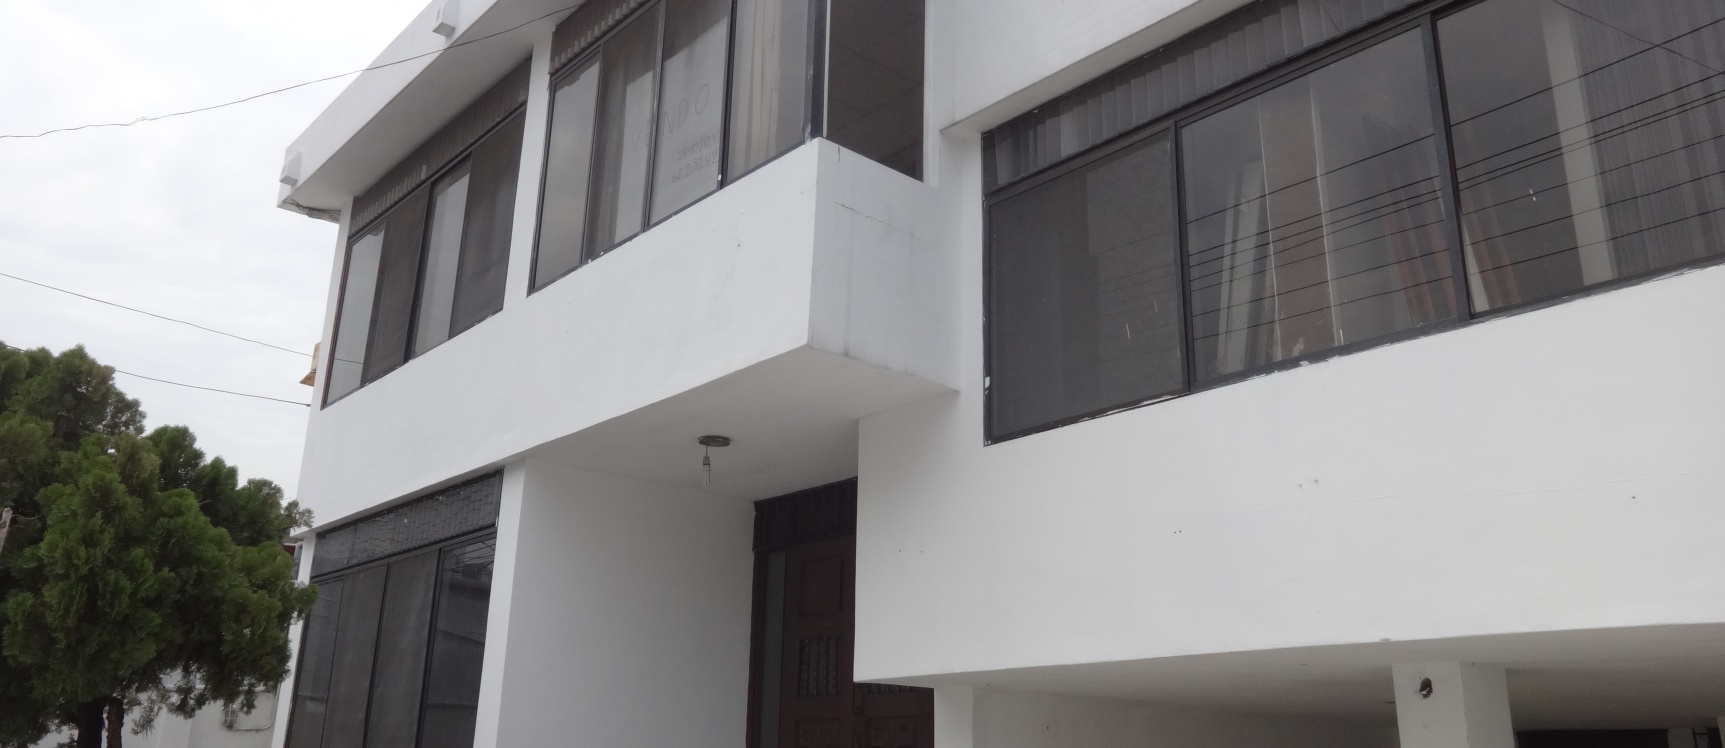 GeoBienes - Casa ideal para empresas, Vendo CDLA. ADACE Increíble Ubicacion - Plusvalia Guayaquil Casas de venta y alquiler Inmobiliaria Ecuador